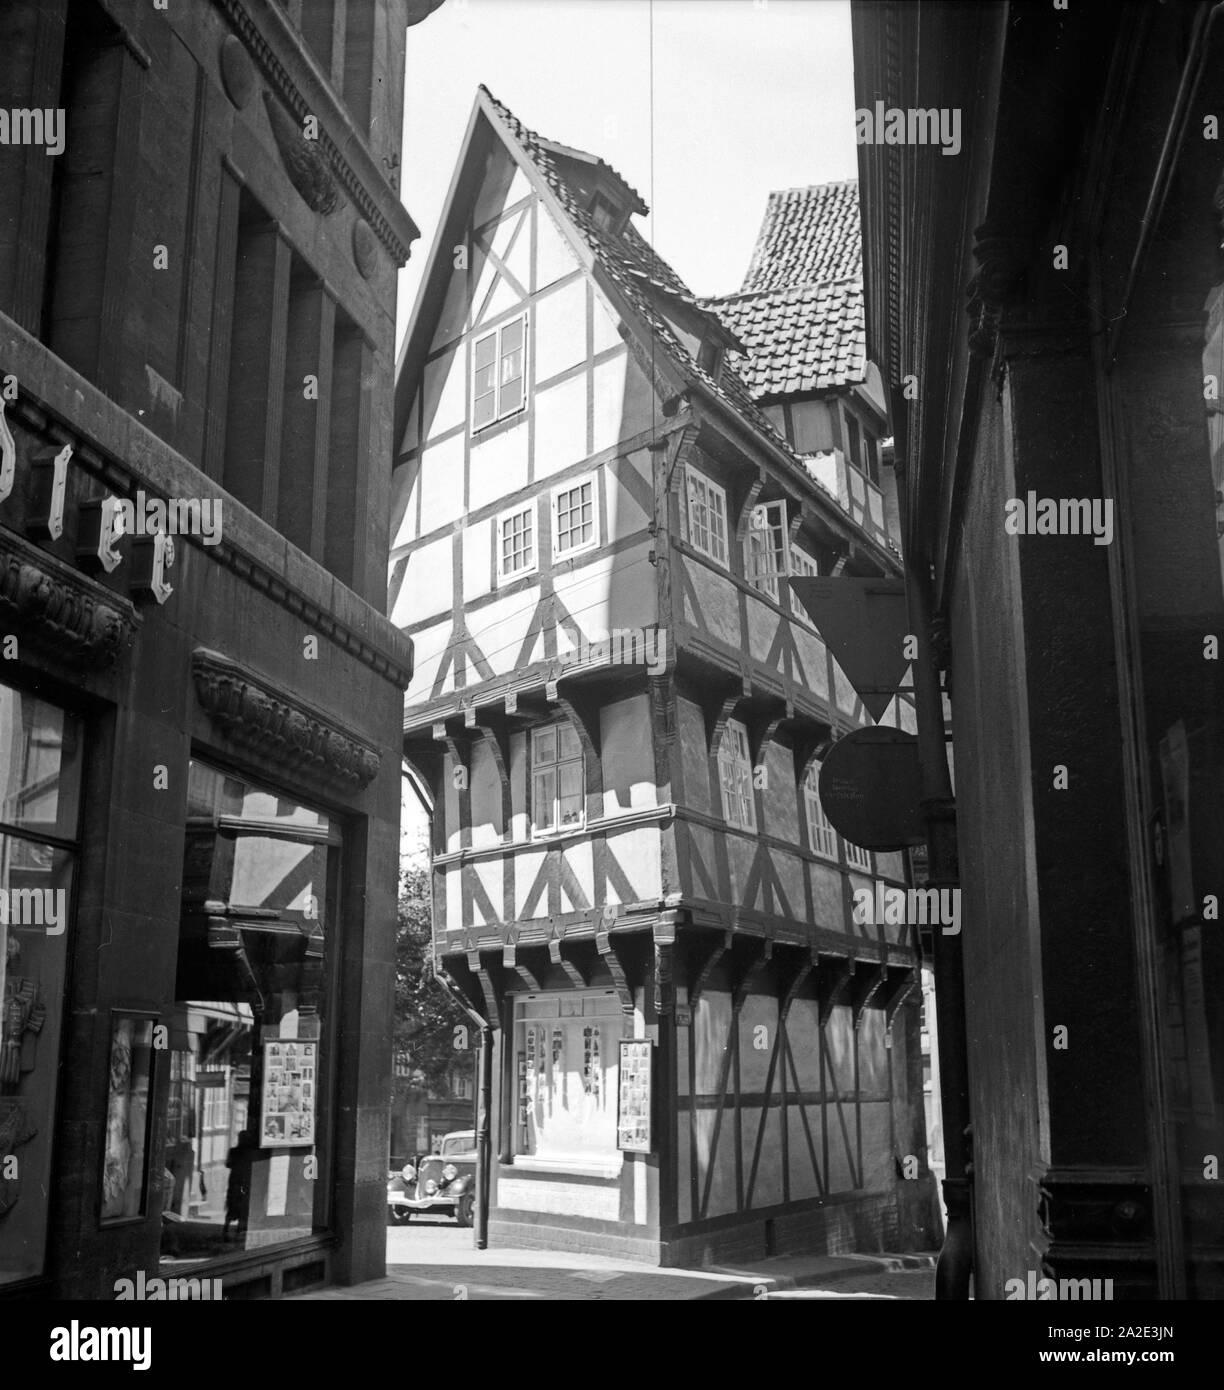 Das Fachwerkhaus 'Umgestülpter Zuckerhut' in der Altstadt von Hildesheim, Deutschland 1930er Jahre. Il legno della casa 'Umgestuelpter Zuckerhut' presso la vecchia città di Hildesheim, Germania 1930s. Foto Stock